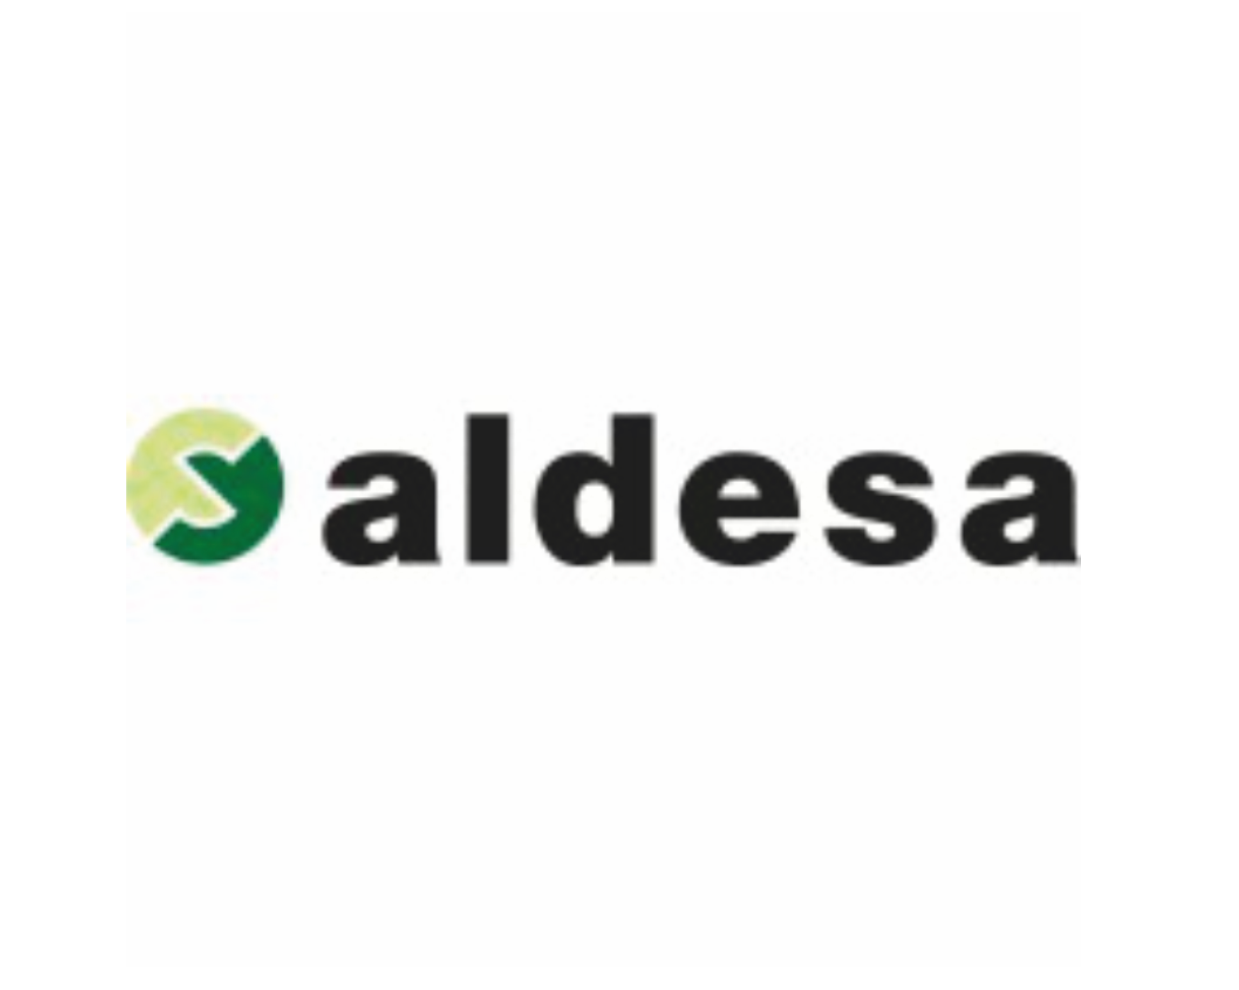 Aldesa Chile Spa